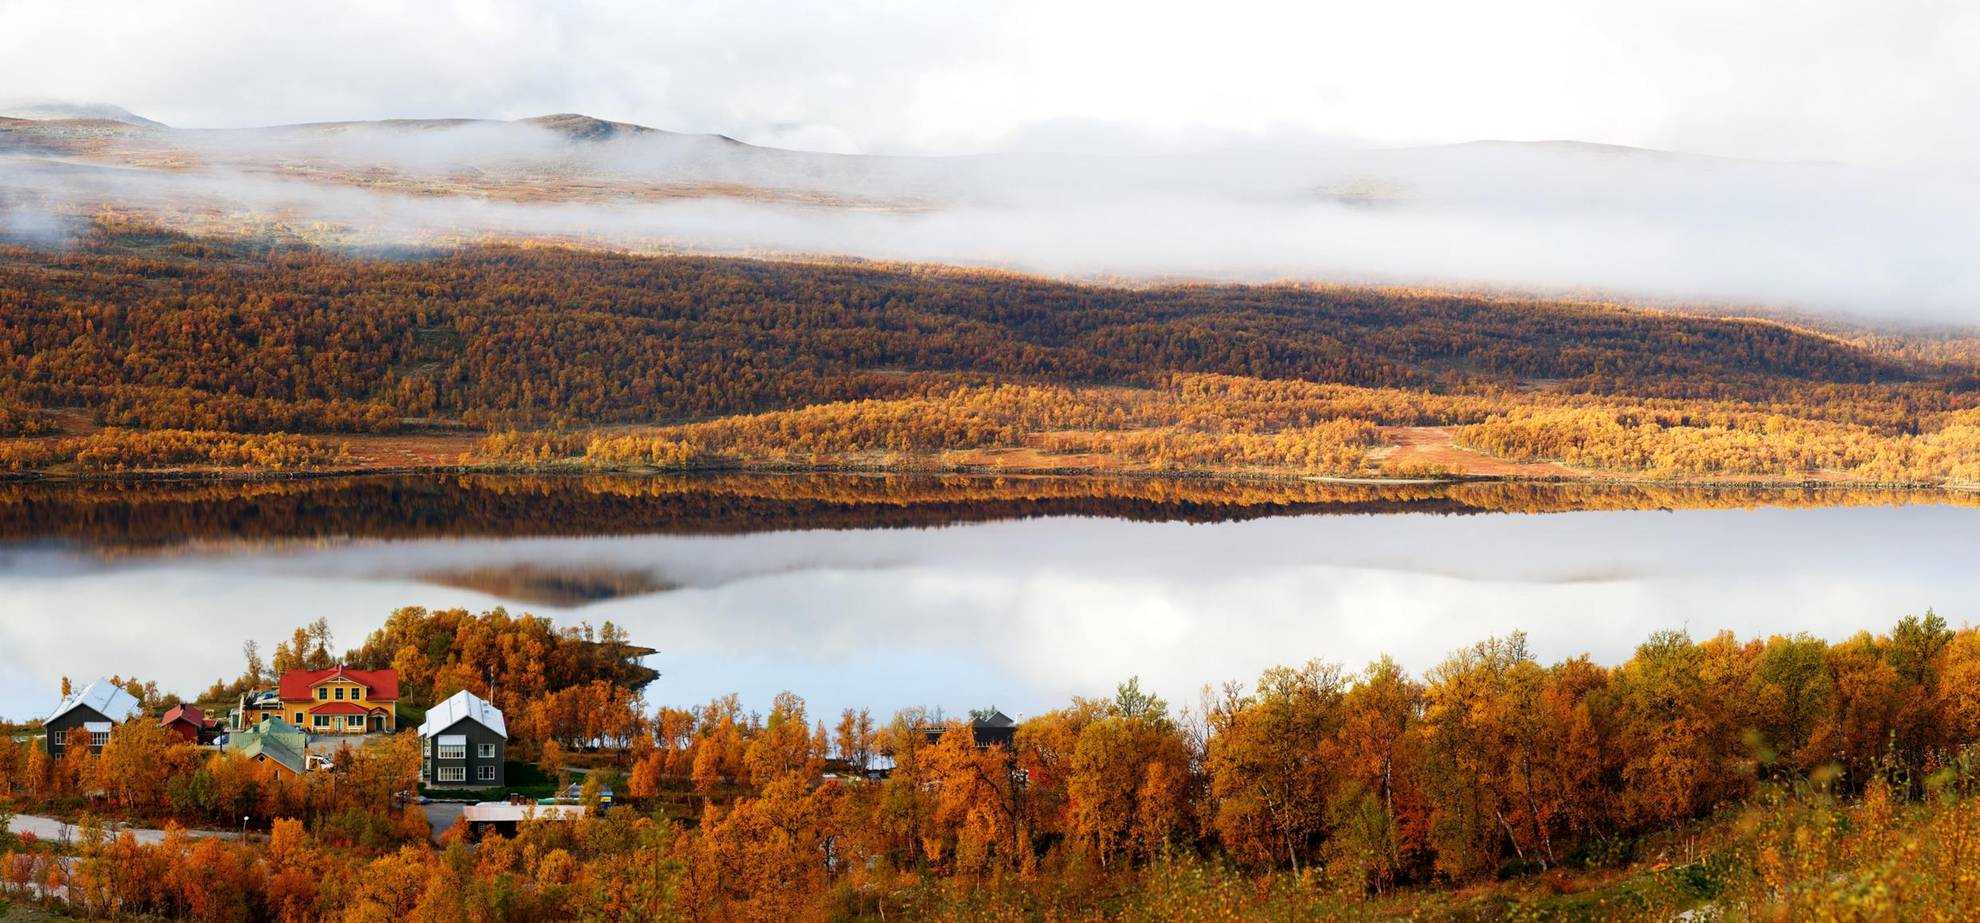 Une belle vue d'automne avec un hôtel au bord d'un lac dans les montagnes. Les arbres sont oranges et on aperçoit du brouillard qui s'étend, au-delà du lac, sur les montagnes